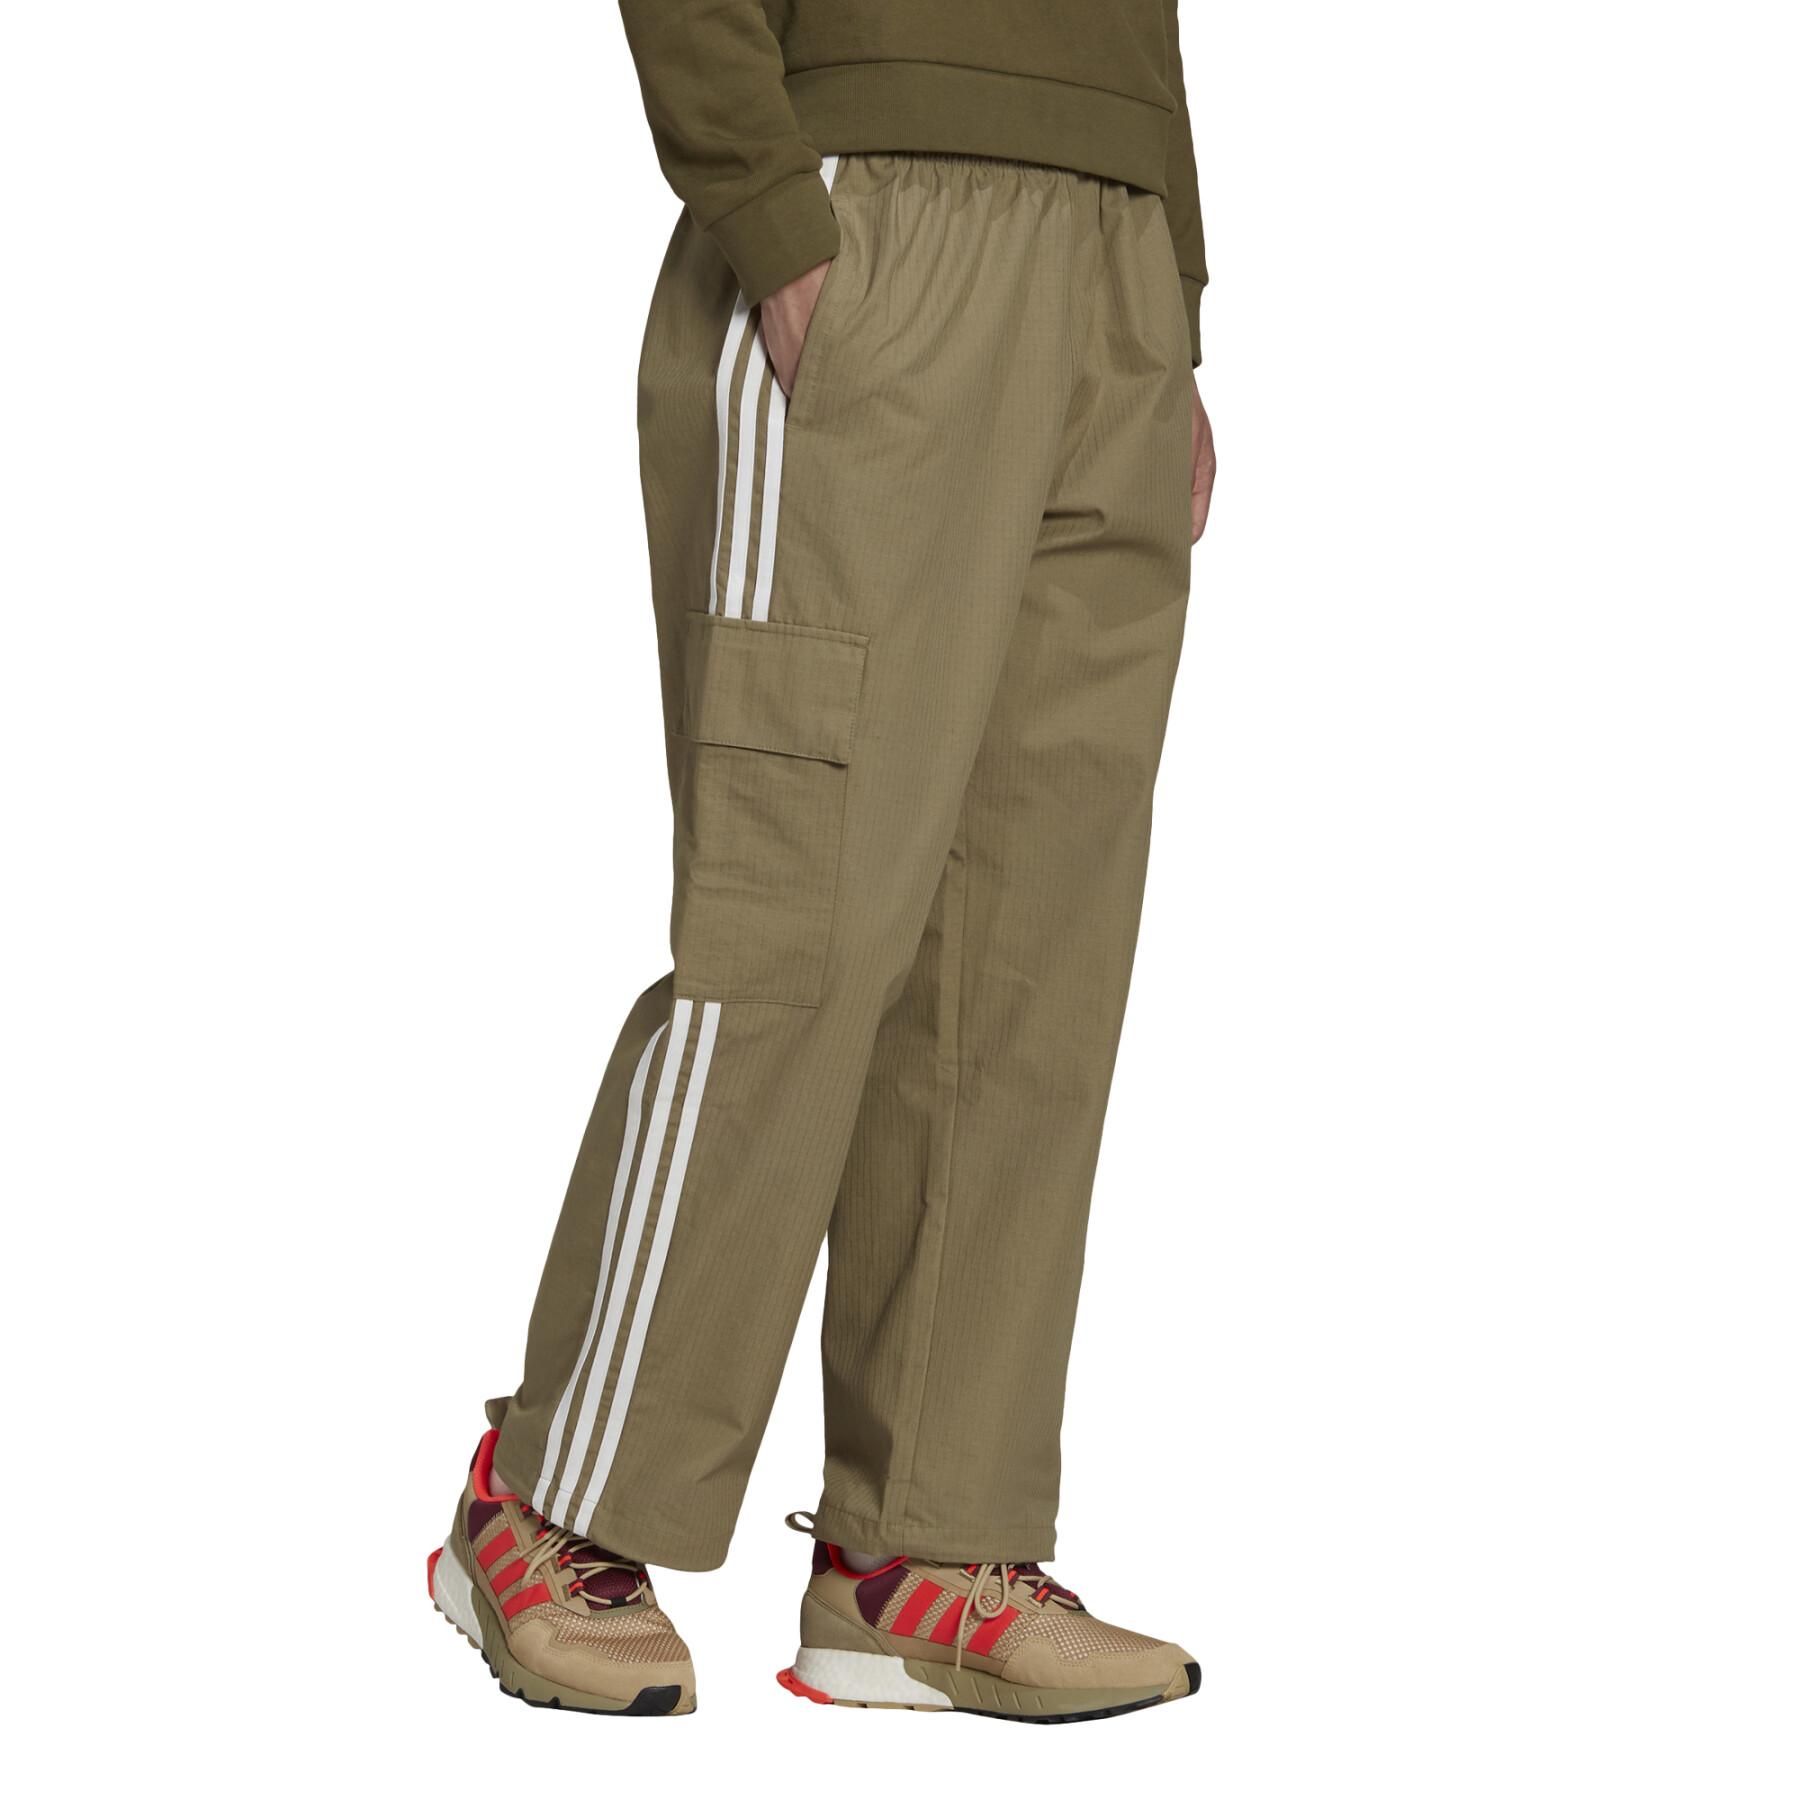 Spodnie dresowe Cargo adidas Originals Adicolor 3-Stripes